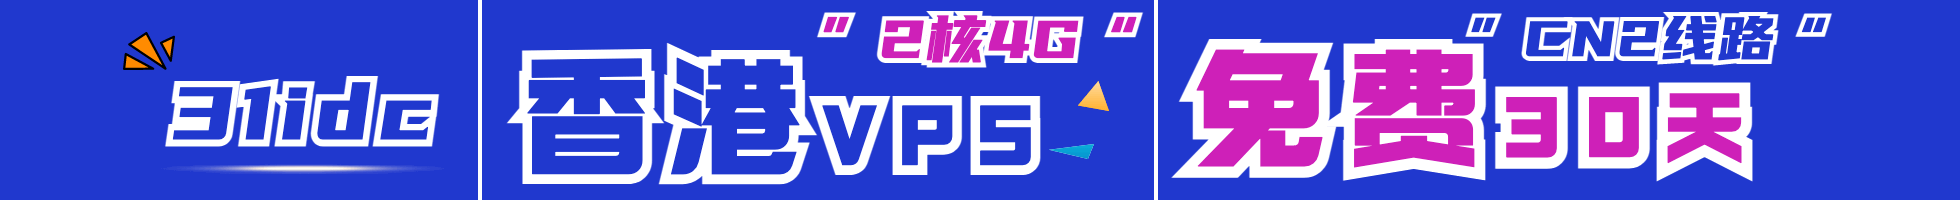 LOCVPS，海外免备案VPS低至252/年，8折循环优惠/中国香港/新加坡数据中心，KVM虚拟/50Mbps带宽